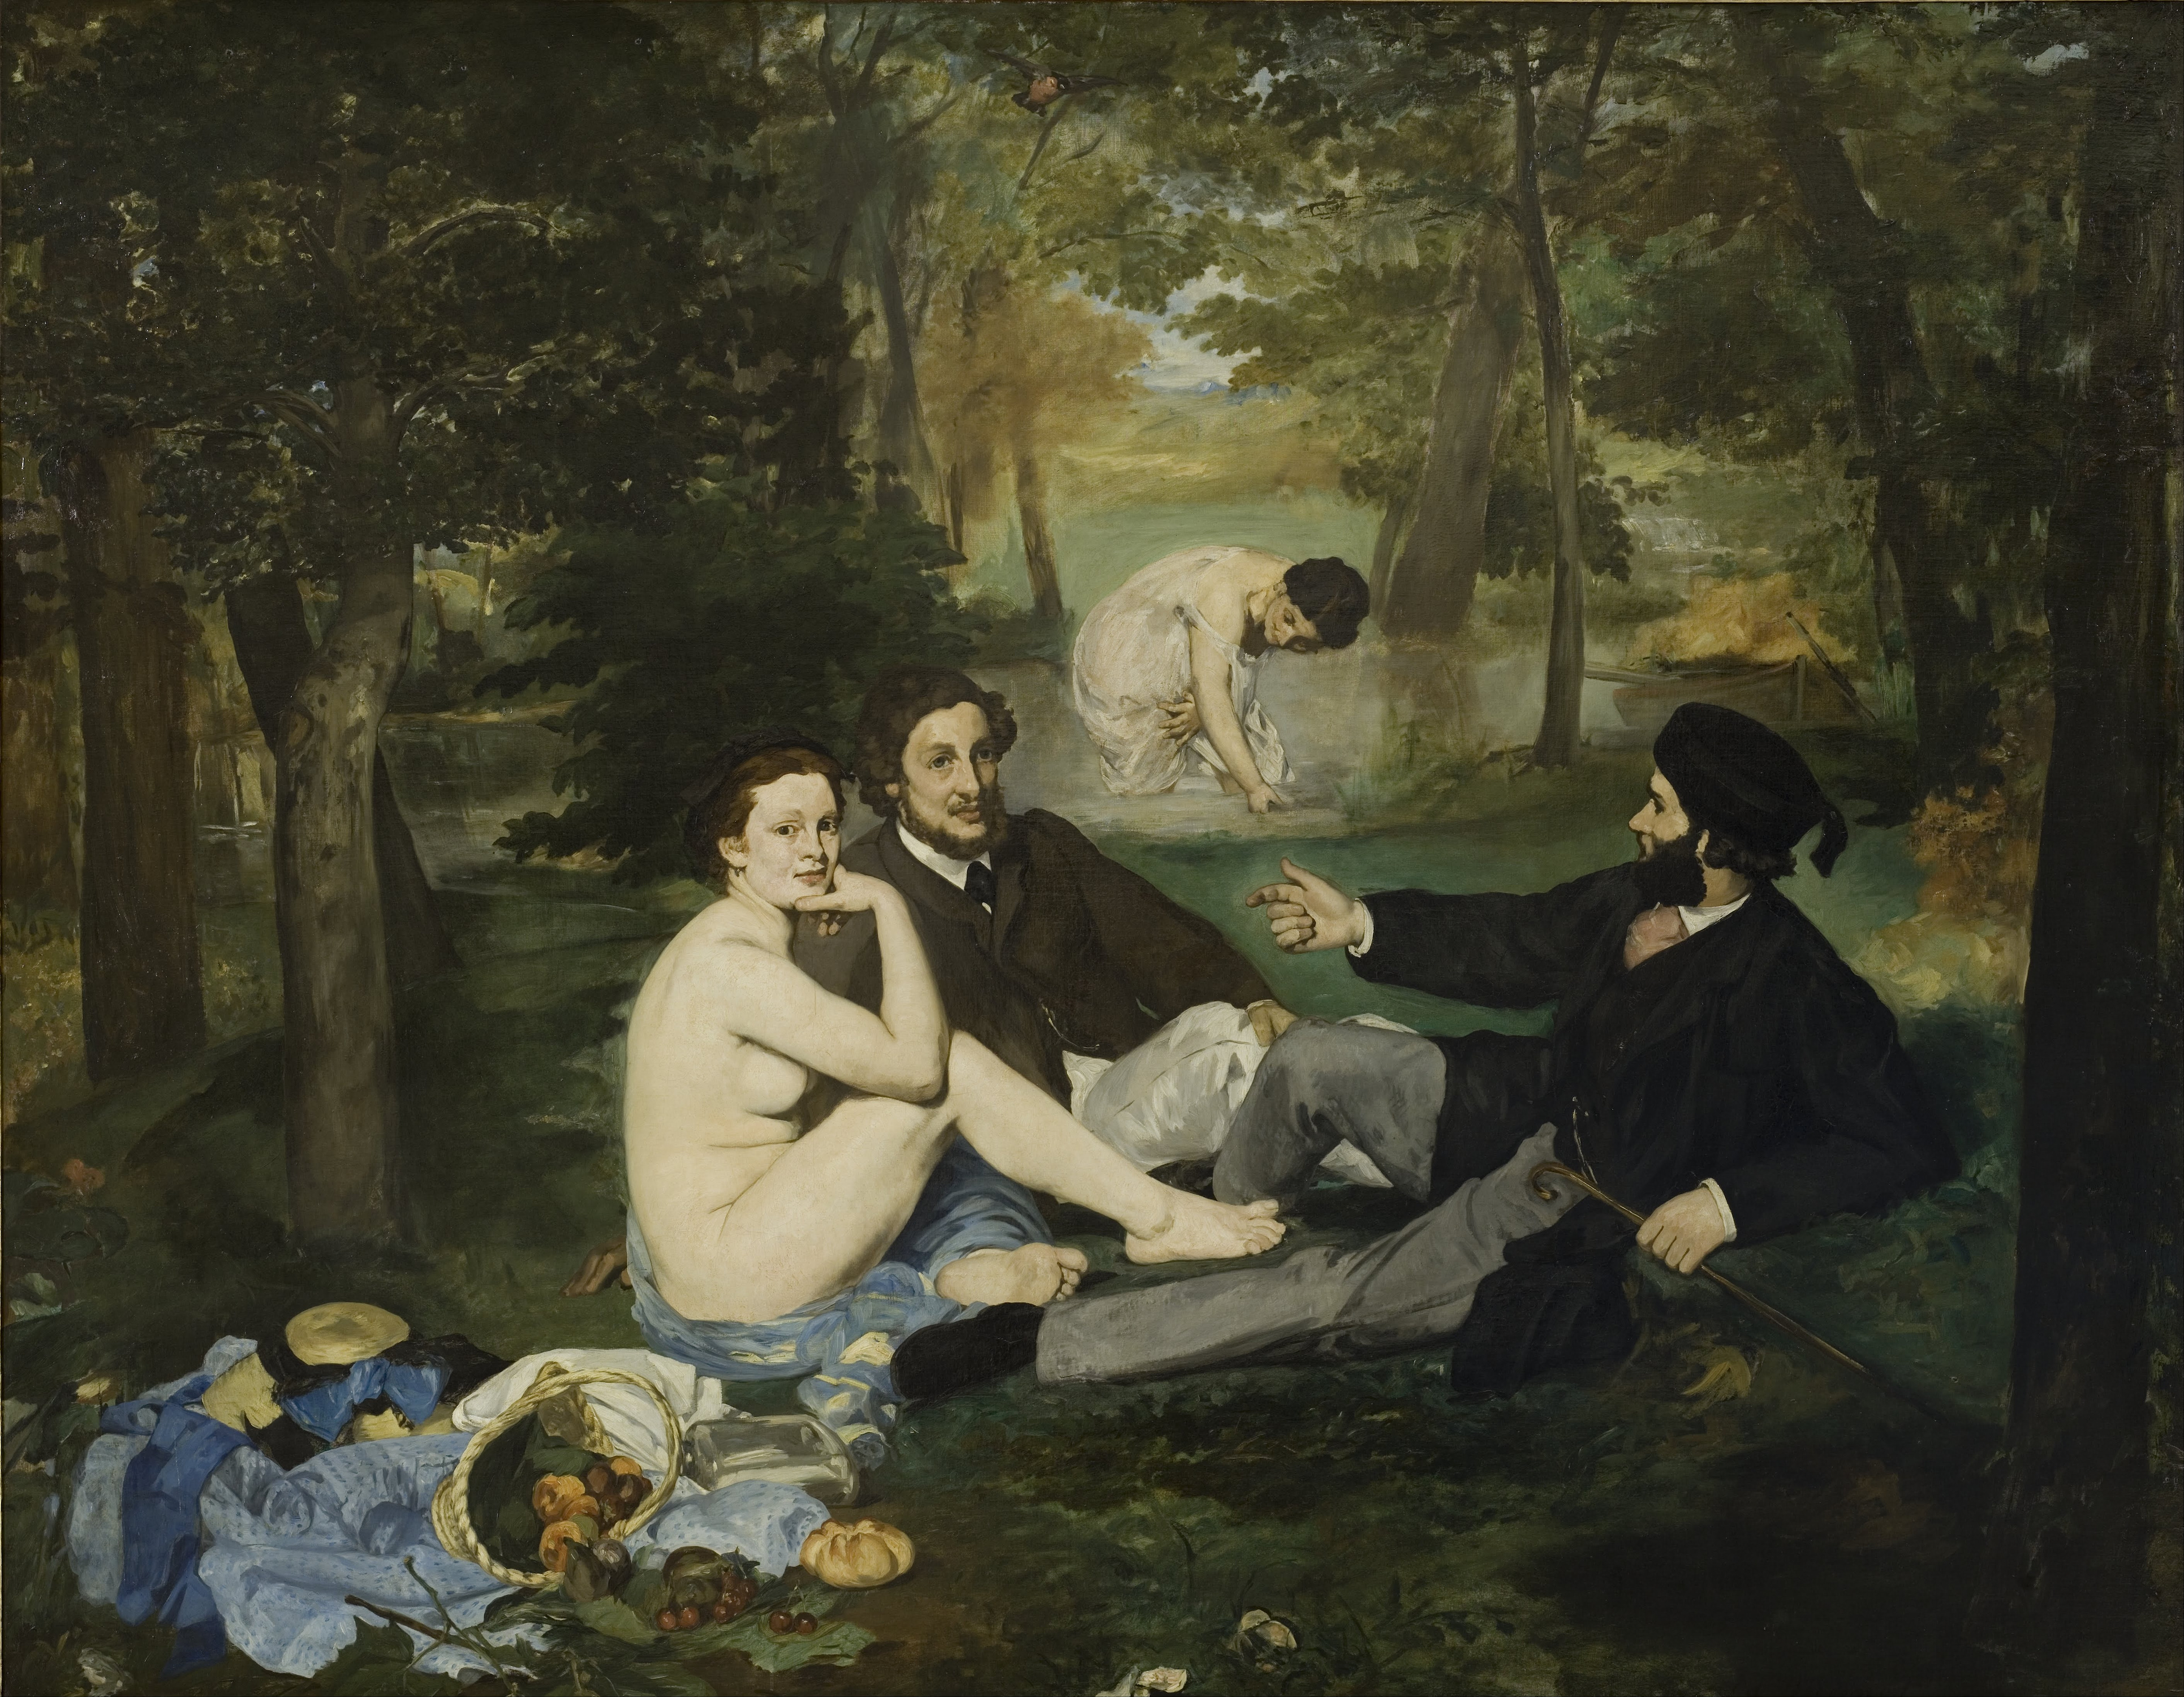 El almuerzo sobre la hierba by Édouard Manet - 1862-1863 - 208 × 265 cm Musée d'Orsay